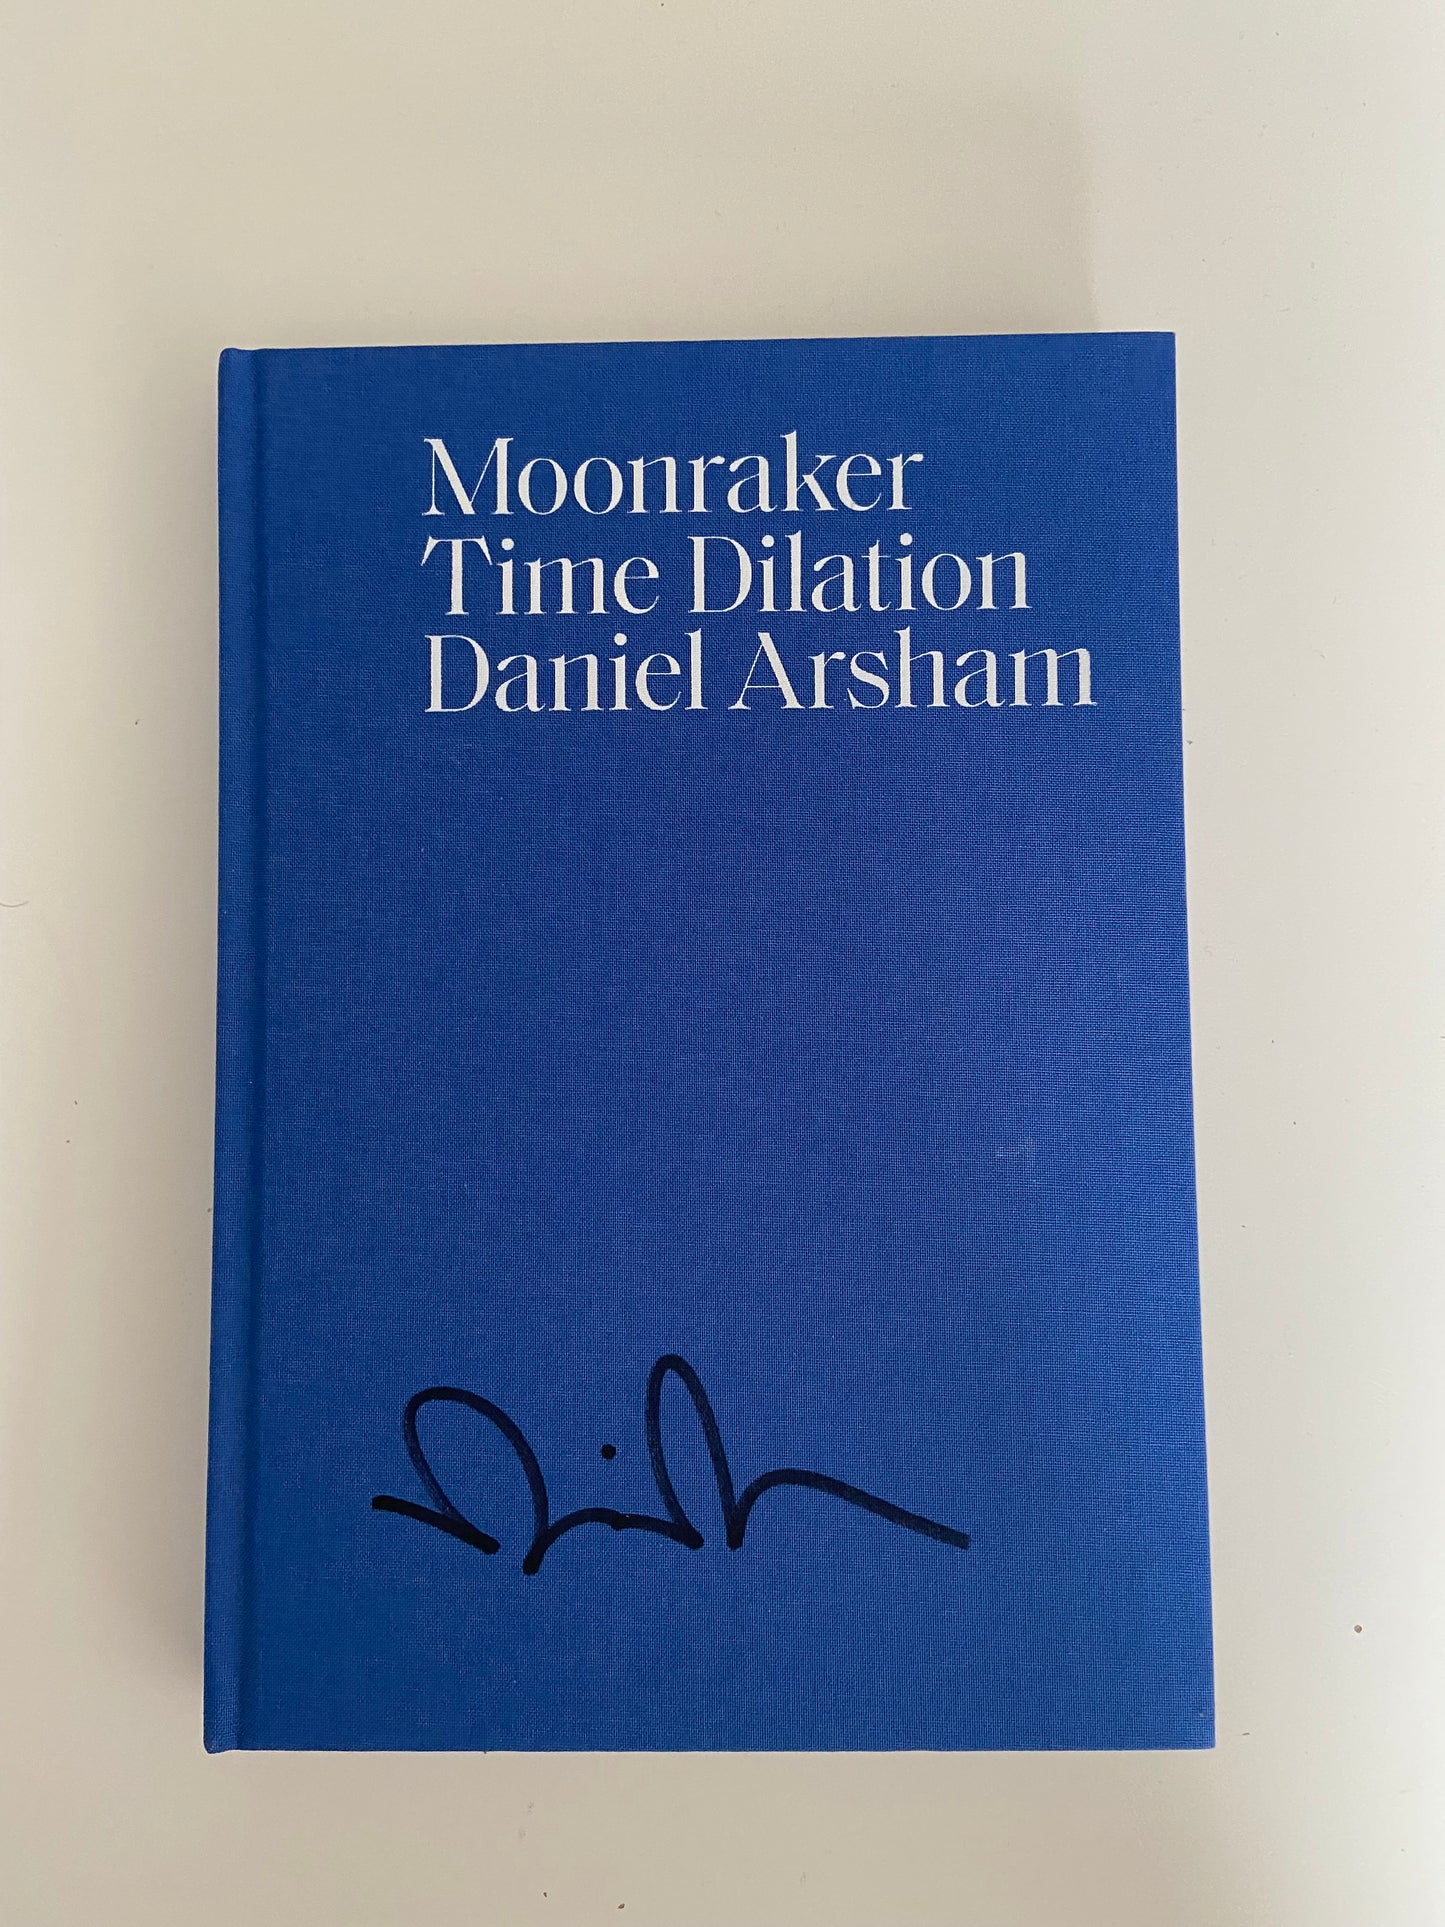 Libro firmado de dilatación del tiempo Daniel Arsham Moonraker